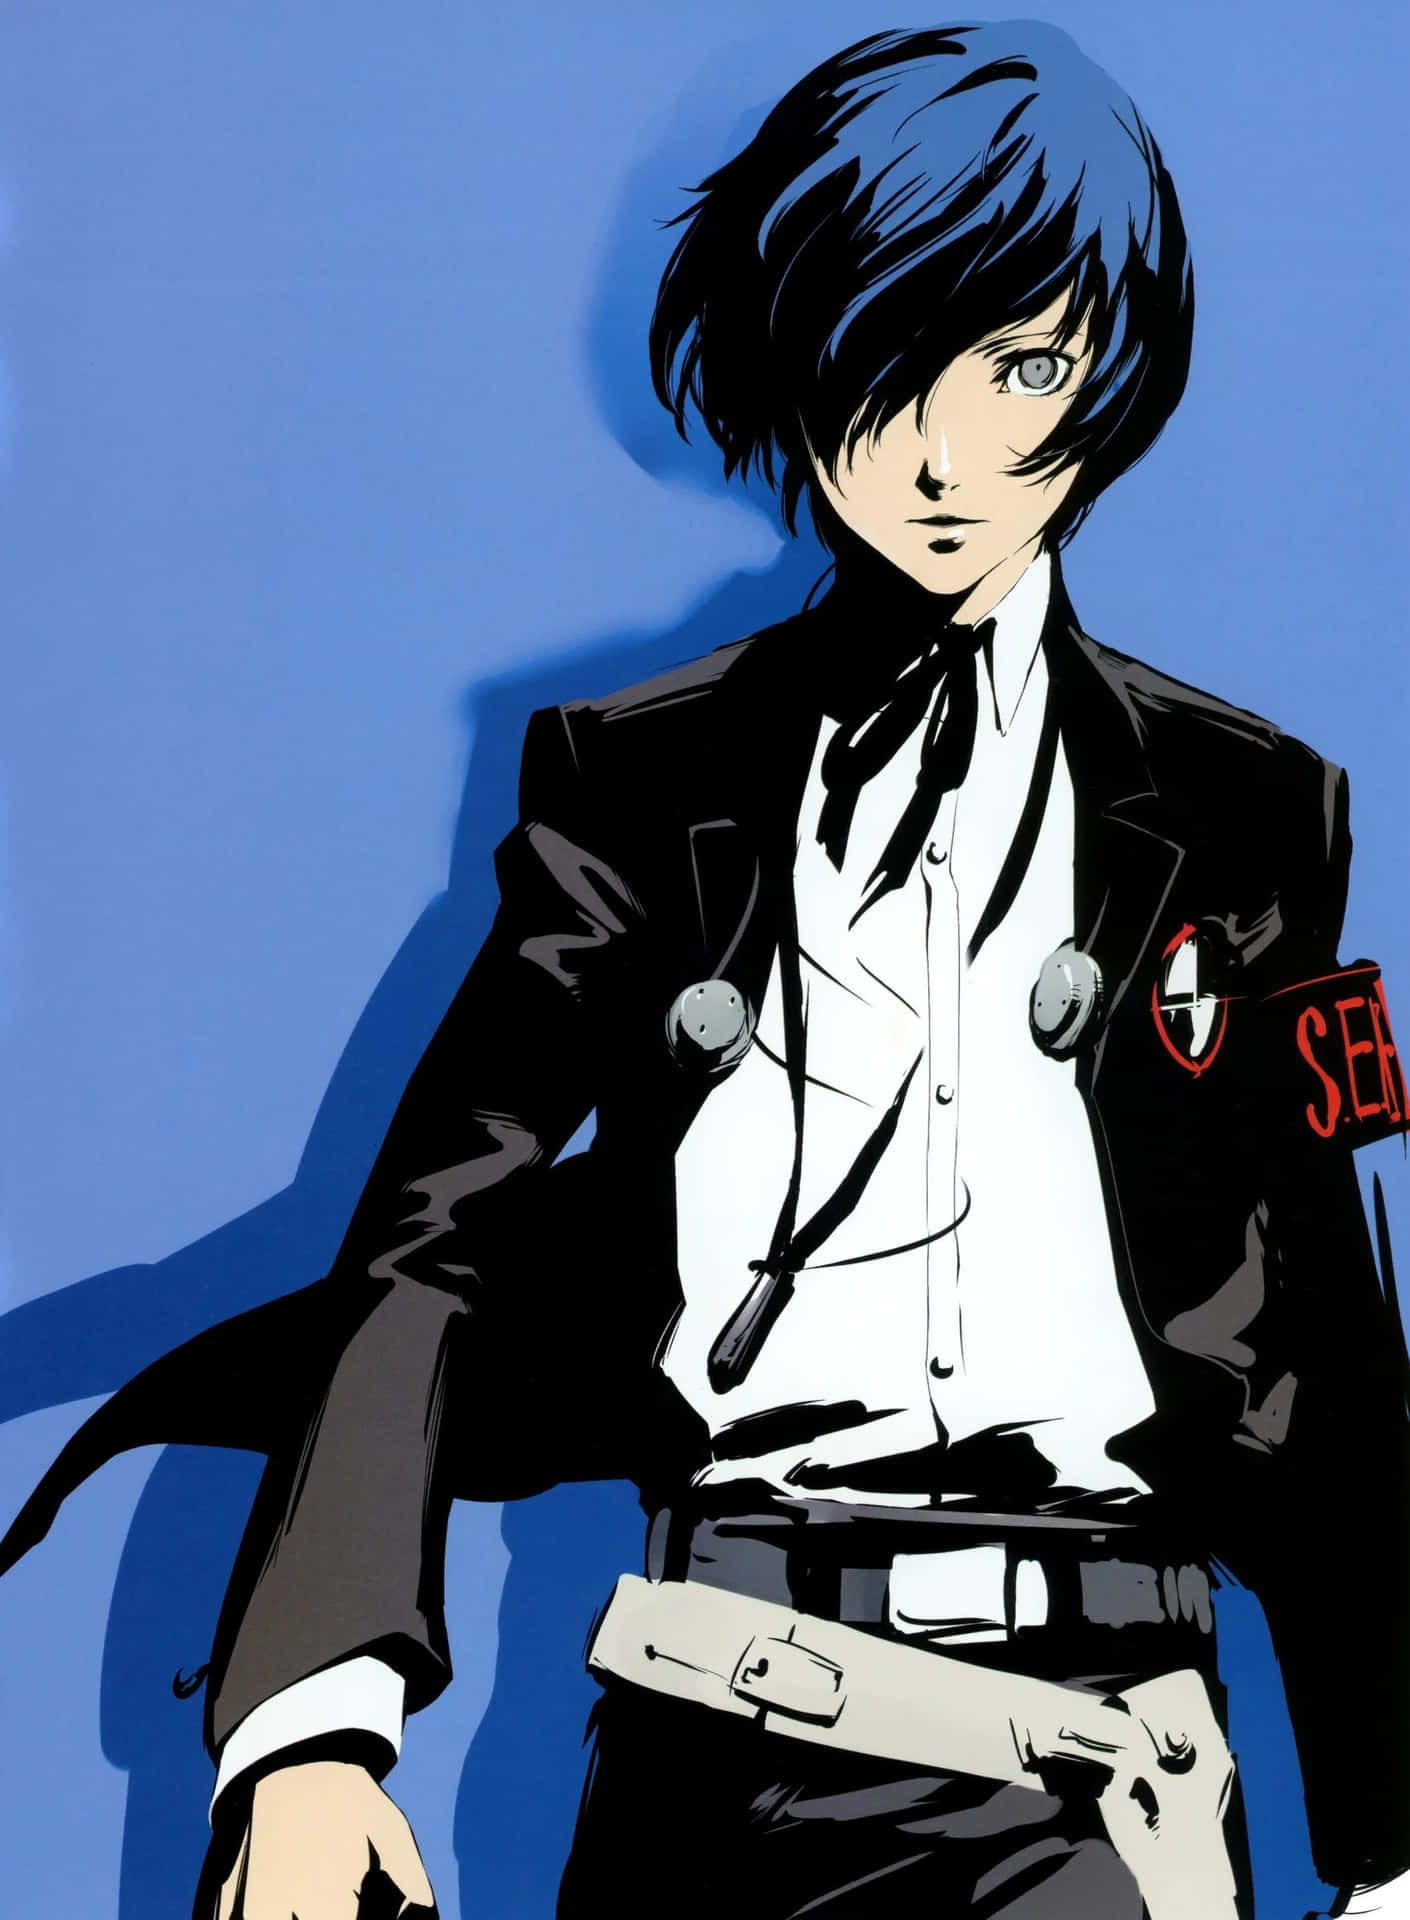 Immaginedel Protagonista Dell'anime Persona 3.